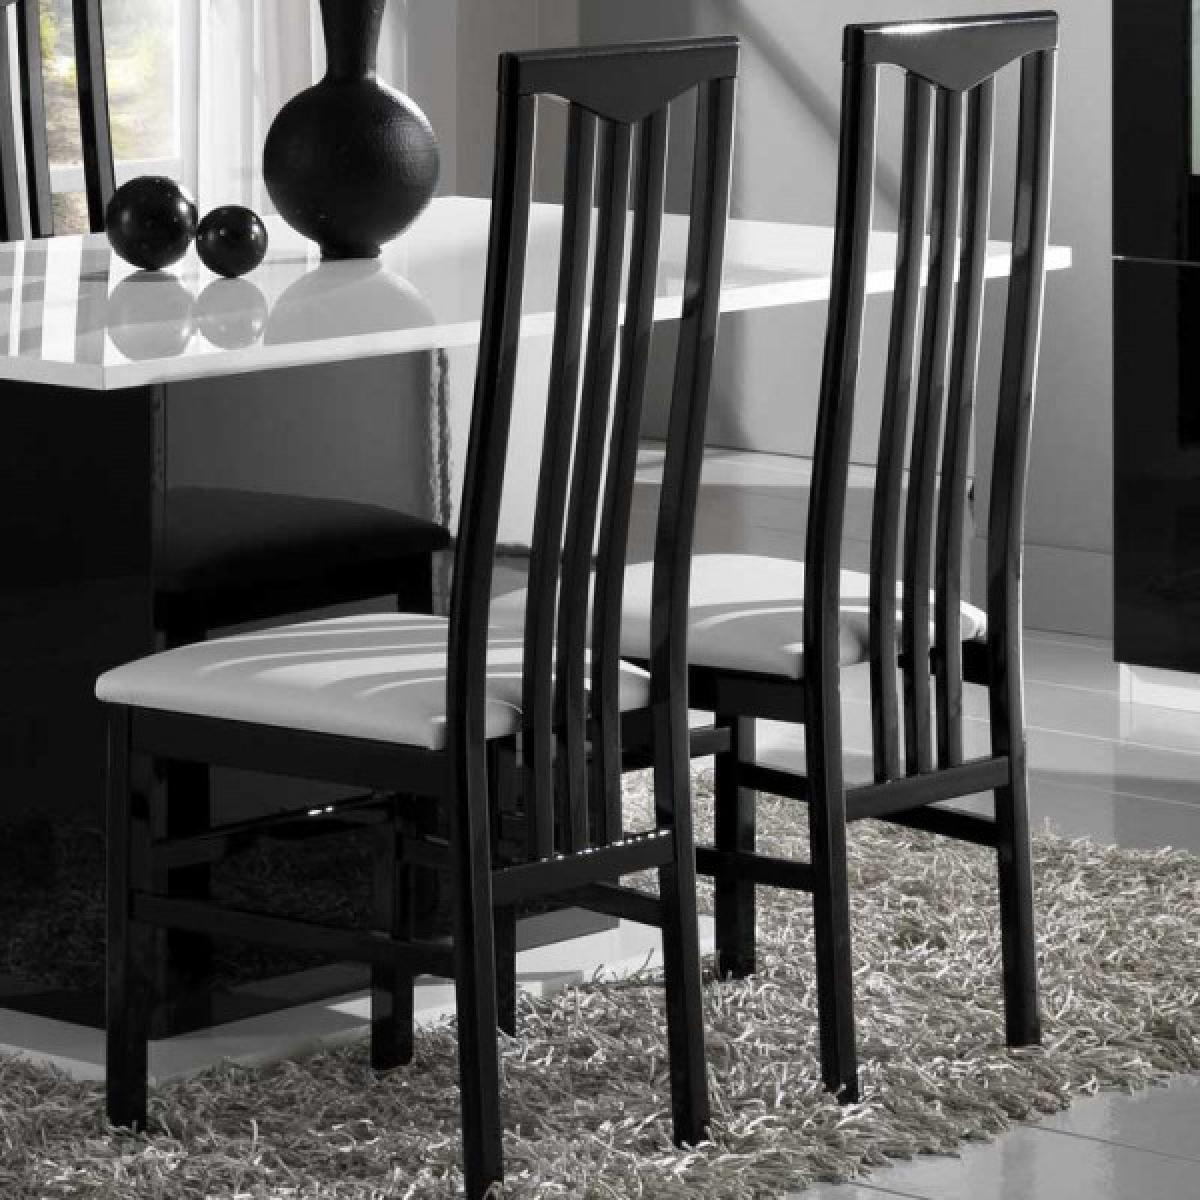 Dansmamaison - Duo de chaises Laque Noir - ZEME - L 46 x l 46 x H 108 cm - Chaises